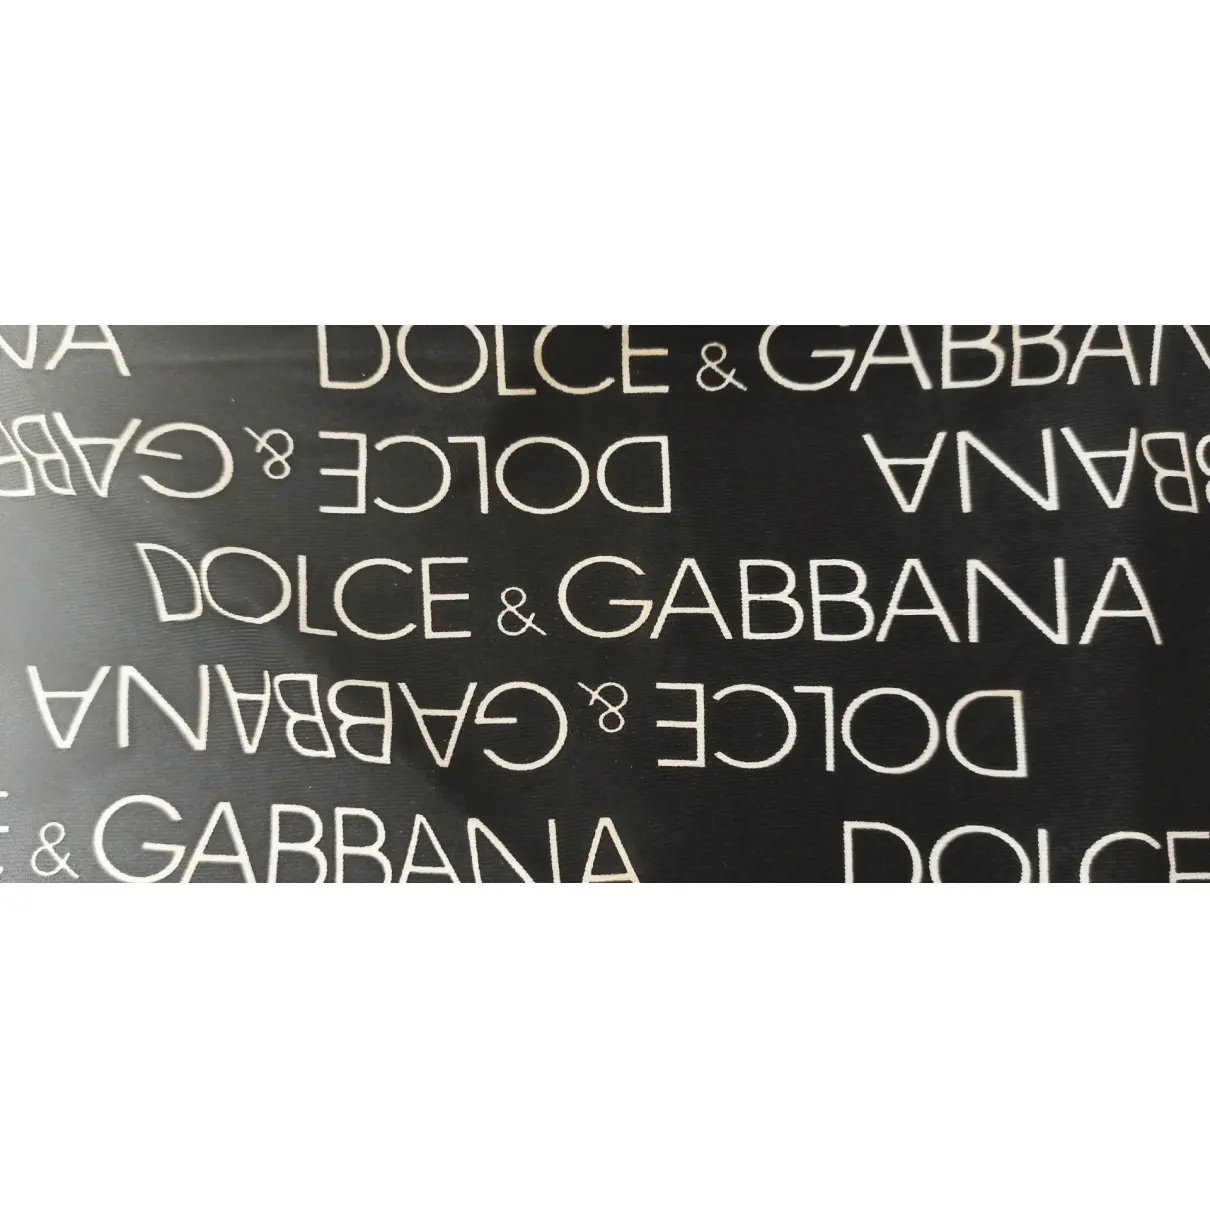 Buy Dolce & Gabbana Silk neckerchief online